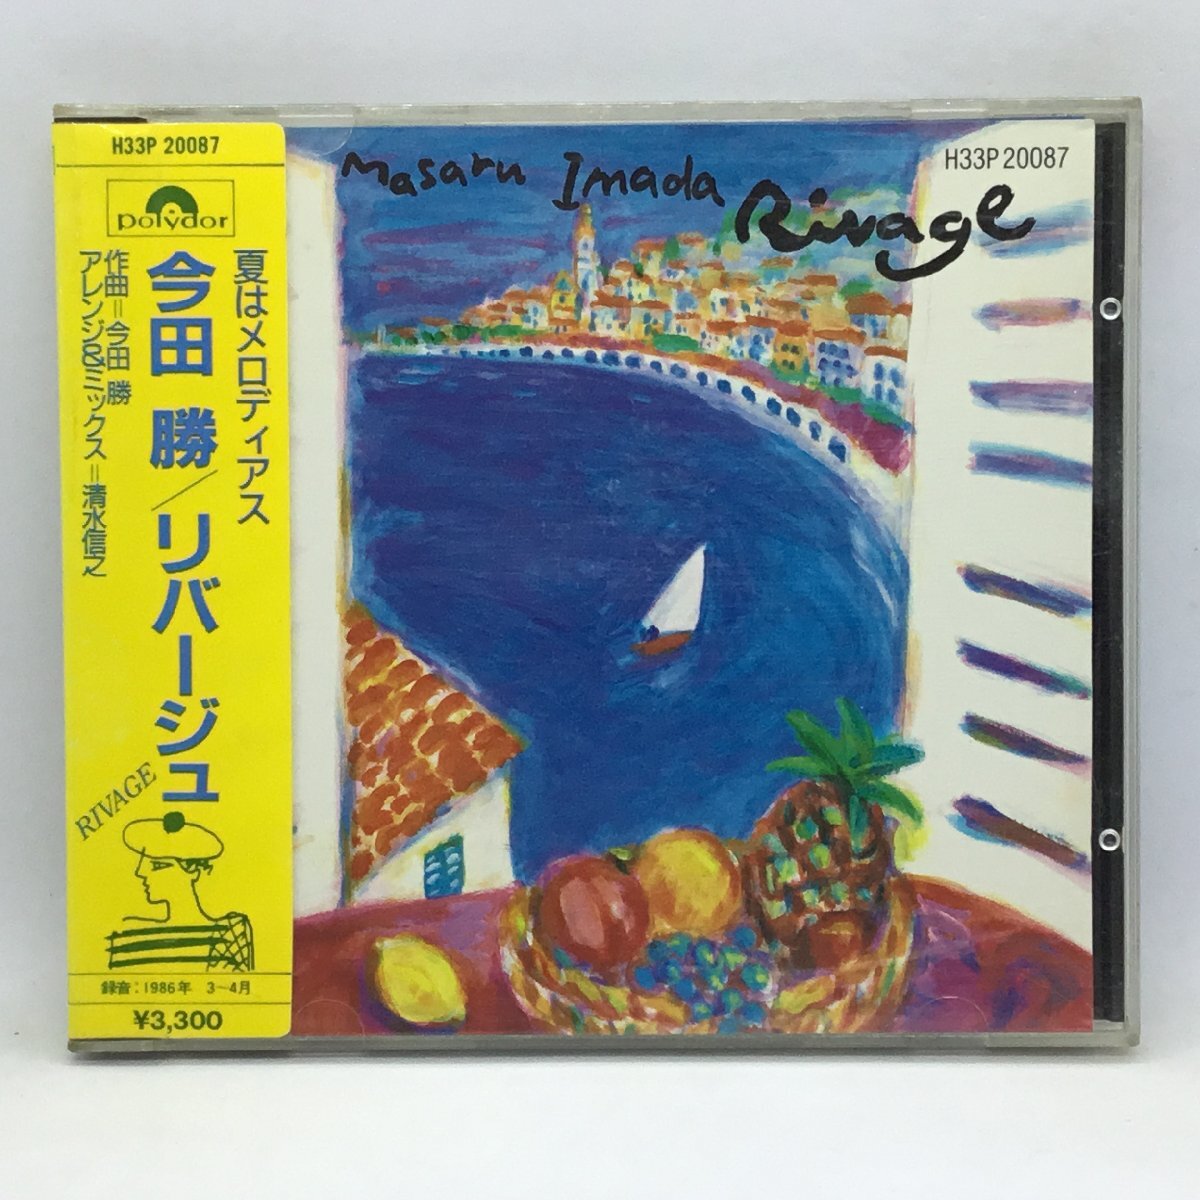 旧規格 SANYOプレス ◇ 今田勝 / リバージュ　(CD) H33P20087　MASARU IMADA / RIVAGE_画像1